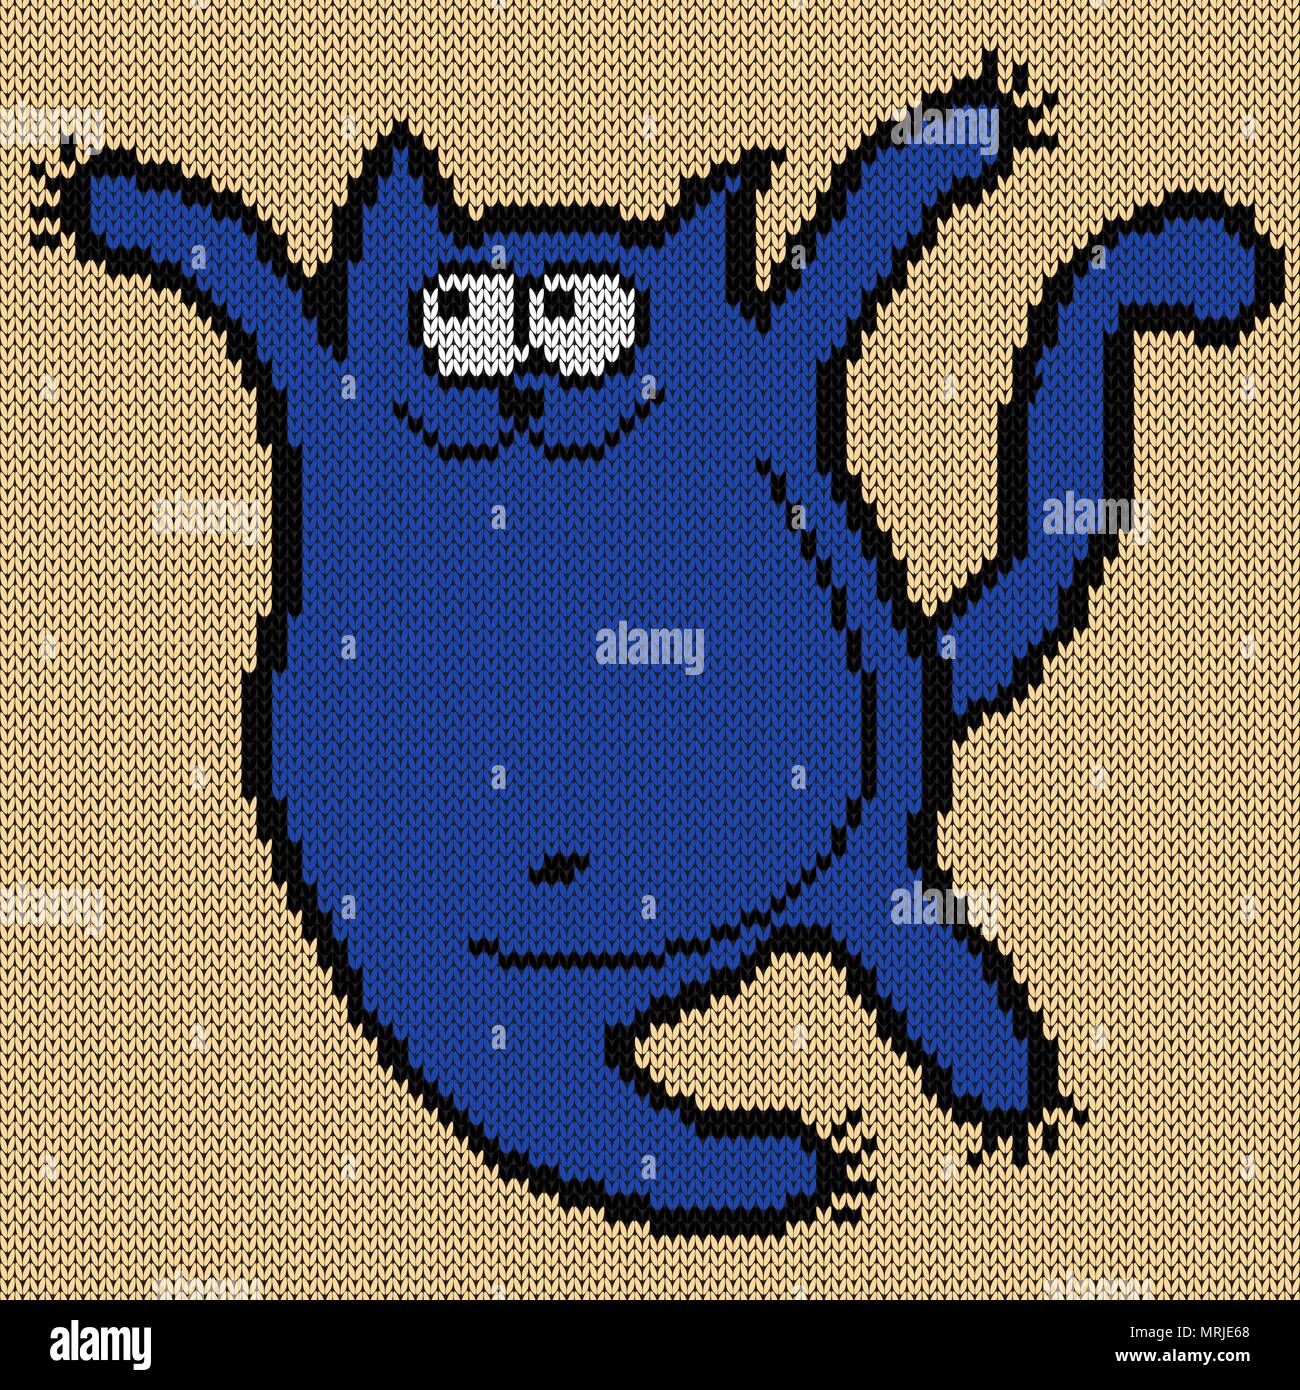 Drôle et fat cat bleu rebondit joyeusement sur le fond beige, knitting pattern vecteur comme une texture de tissu Illustration de Vecteur